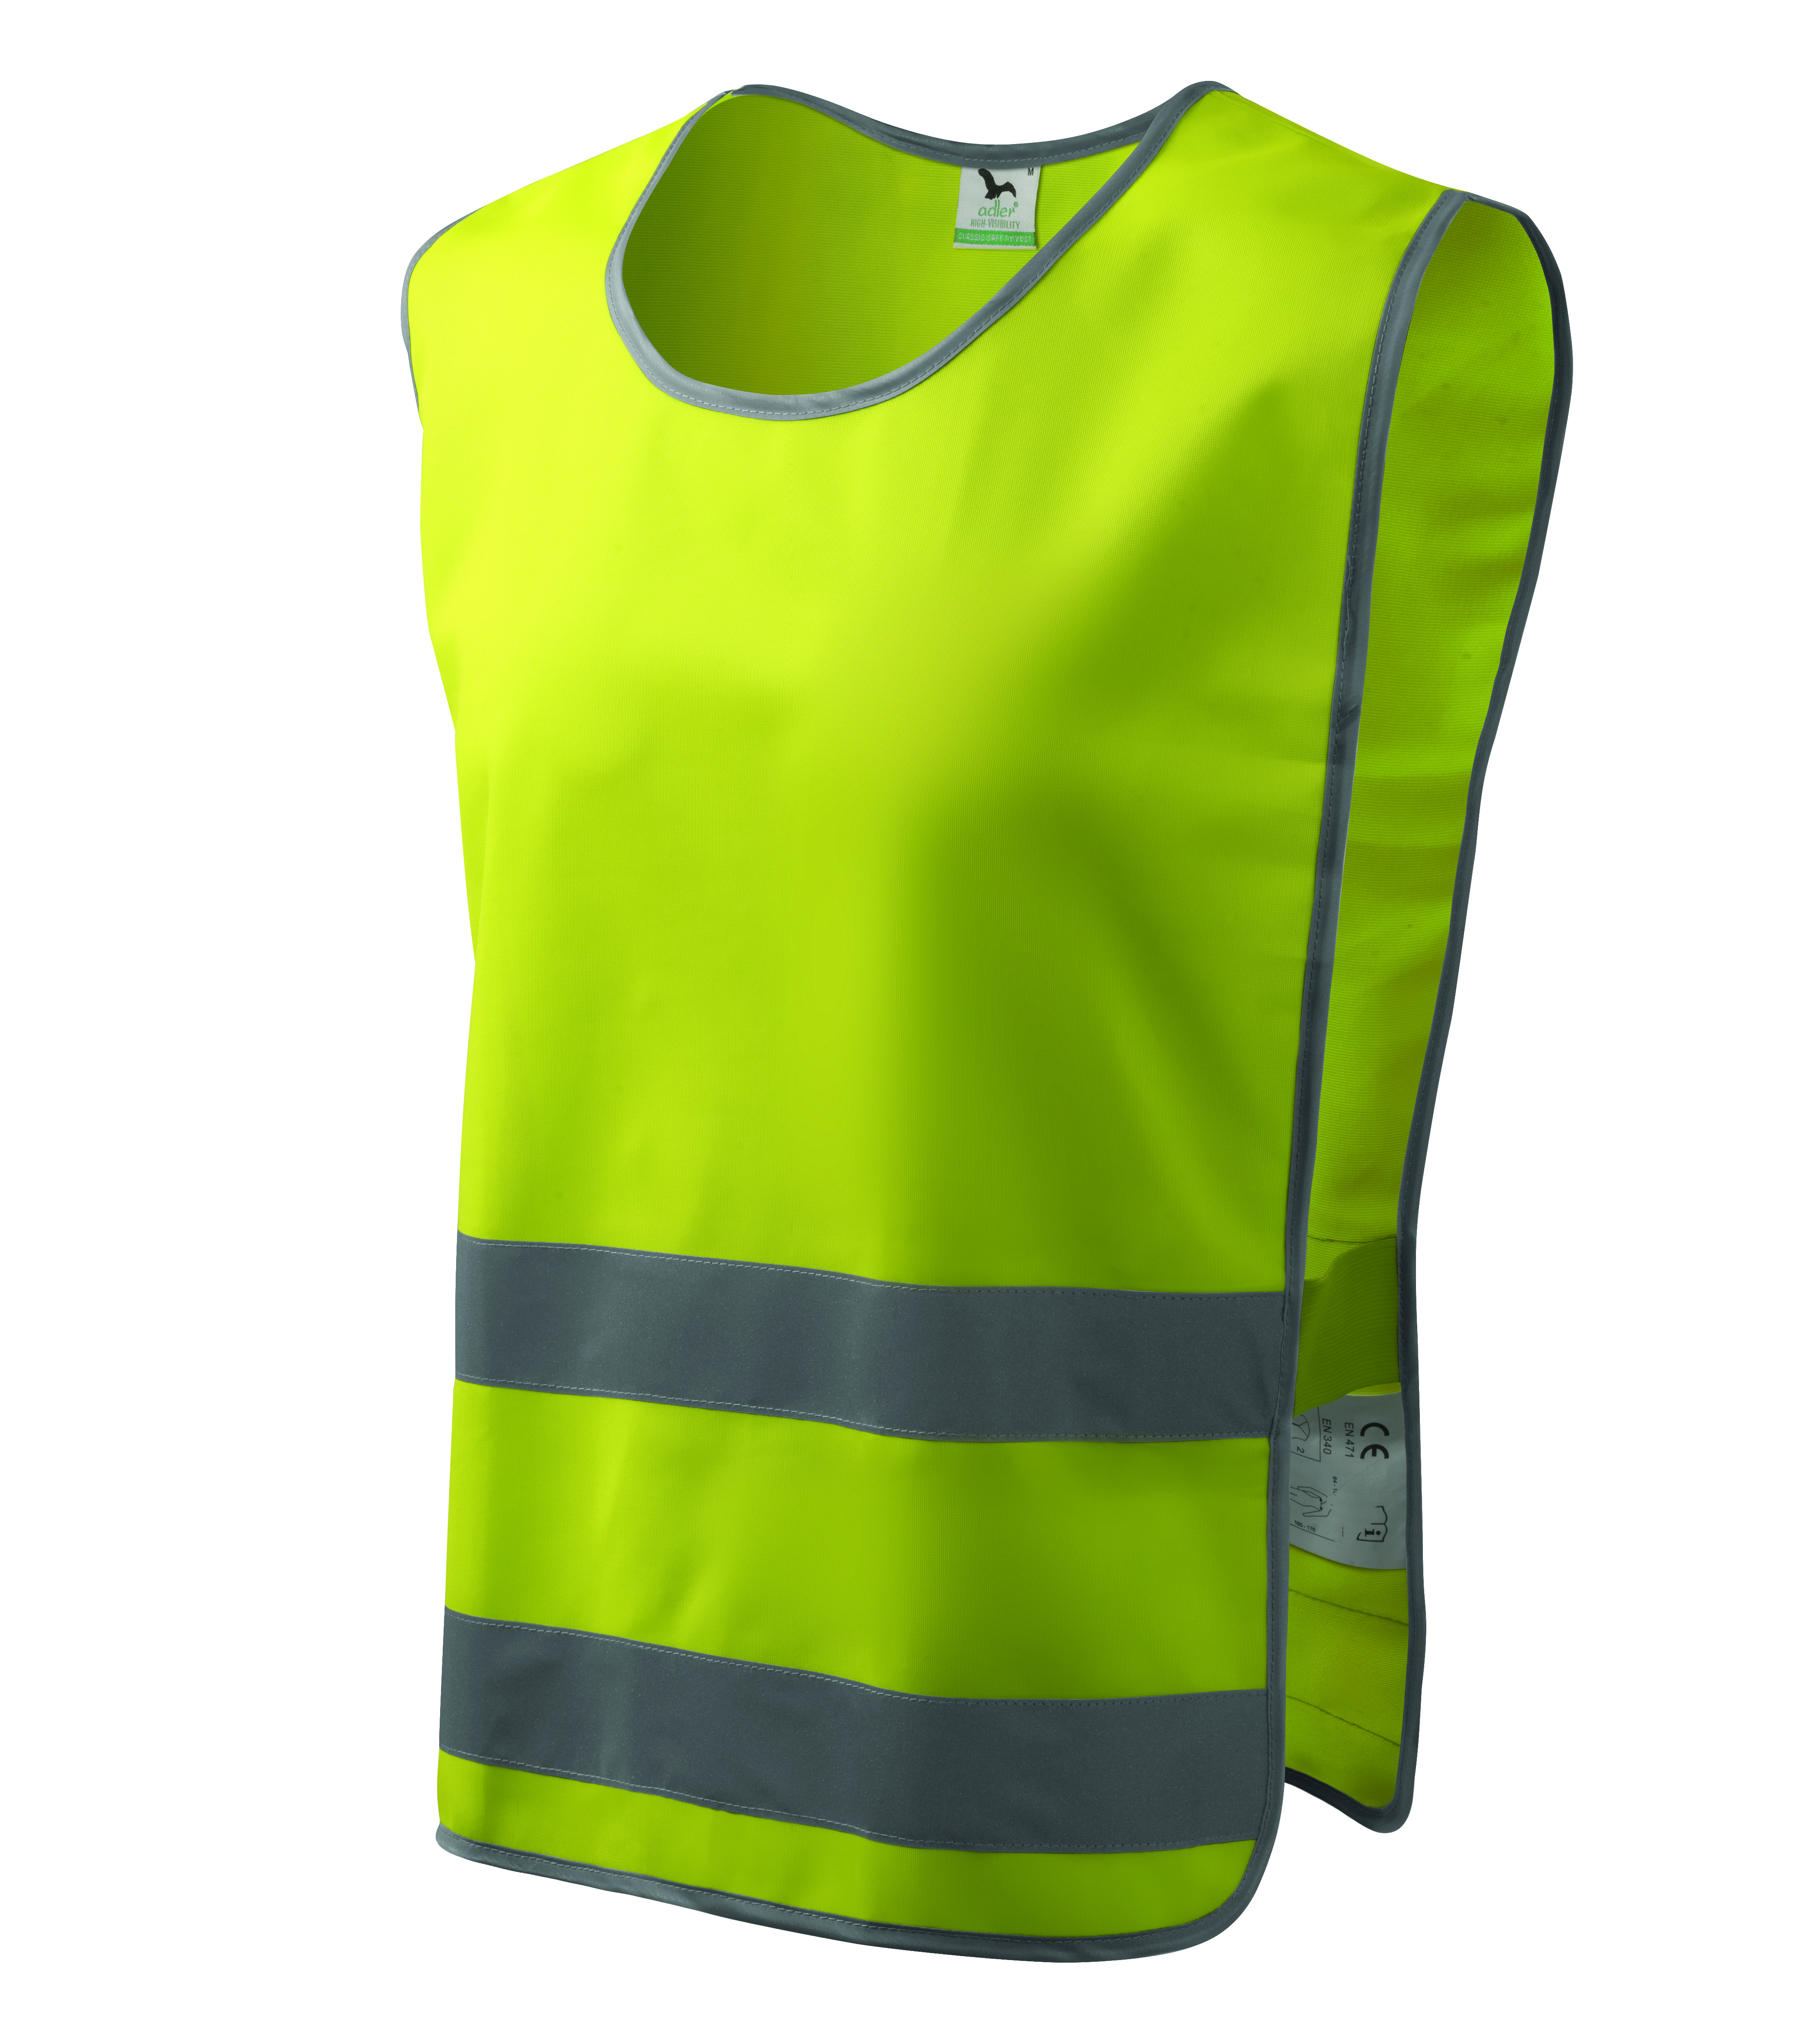 Żółta kamizelka odblaskowa Classic Safety Vest